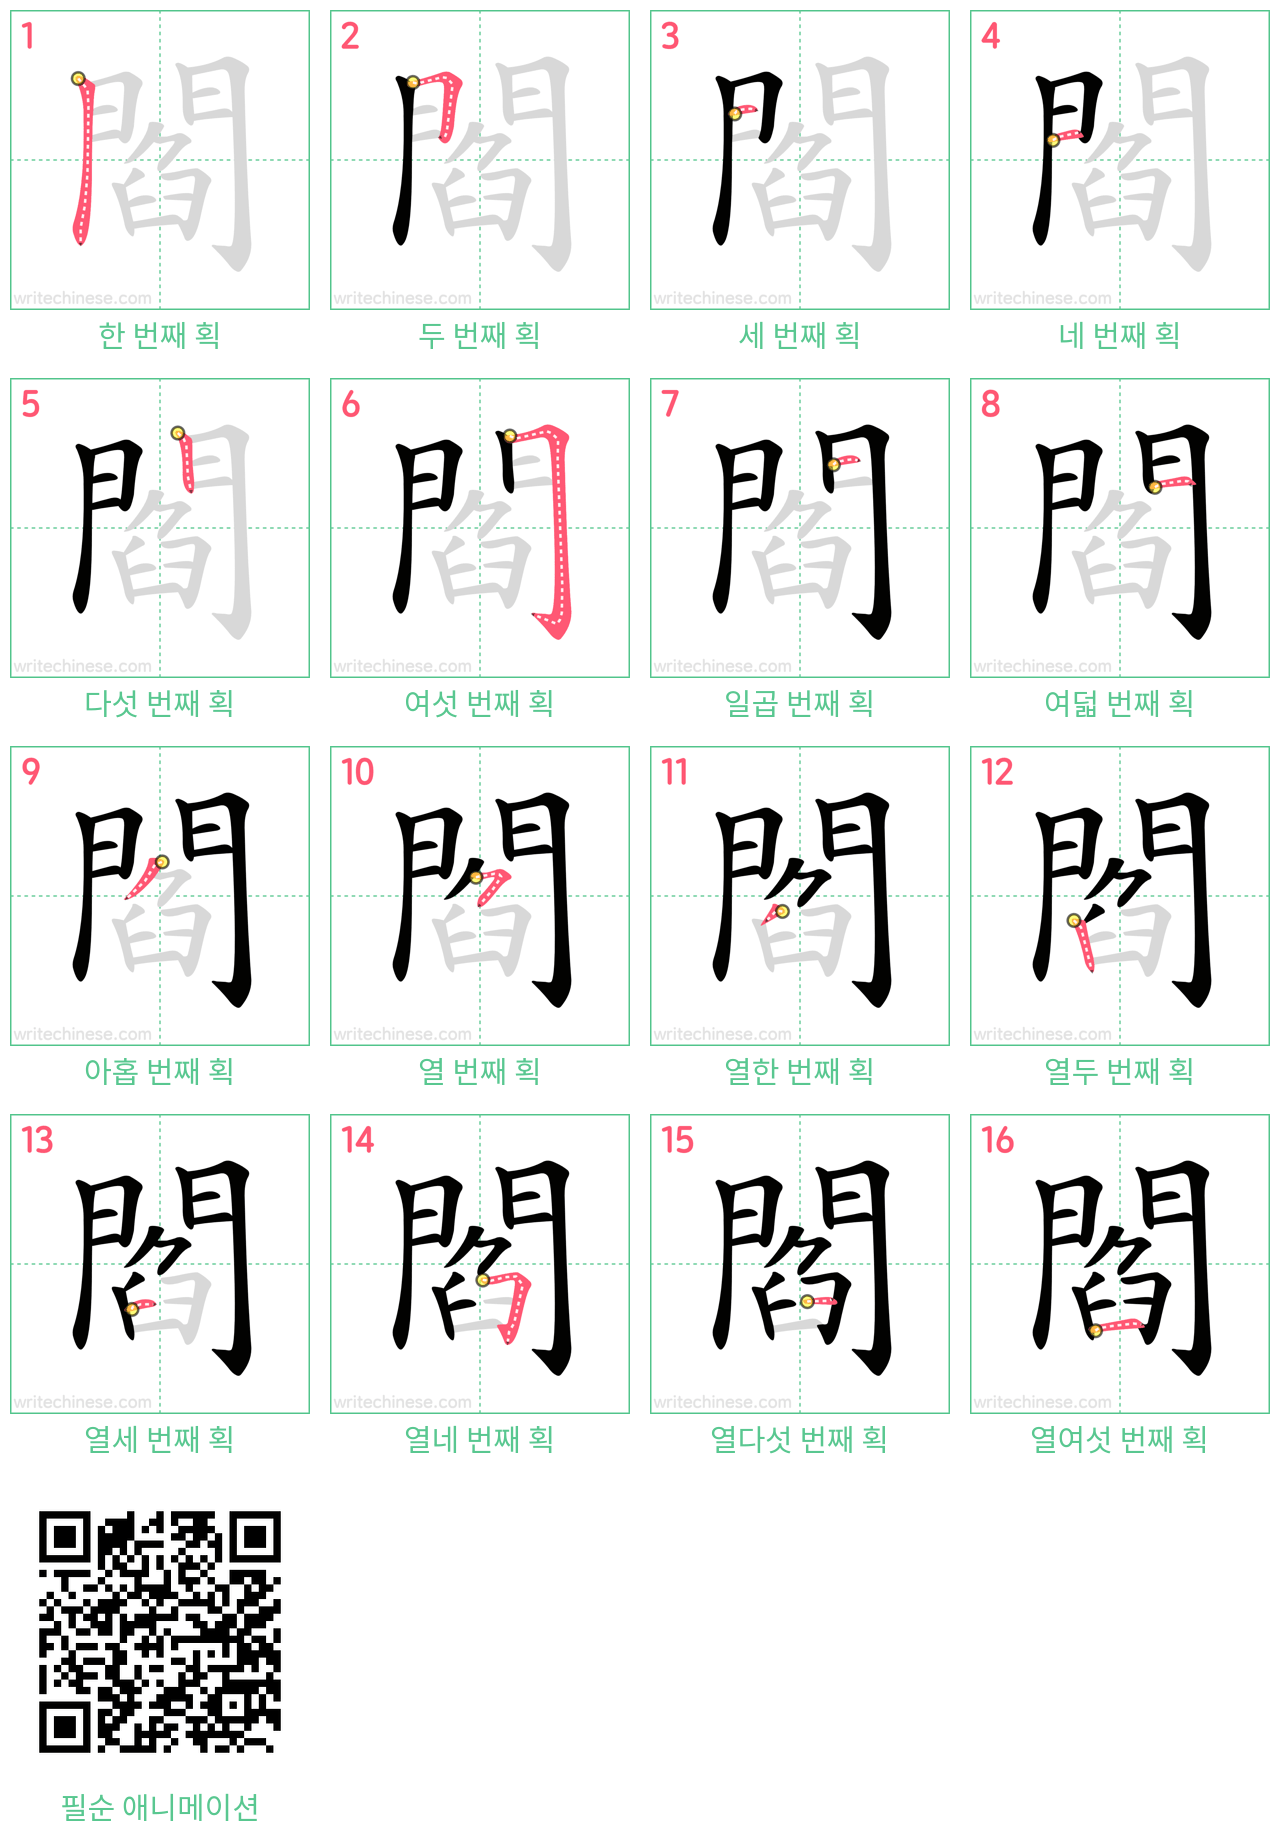 閻 step-by-step stroke order diagrams